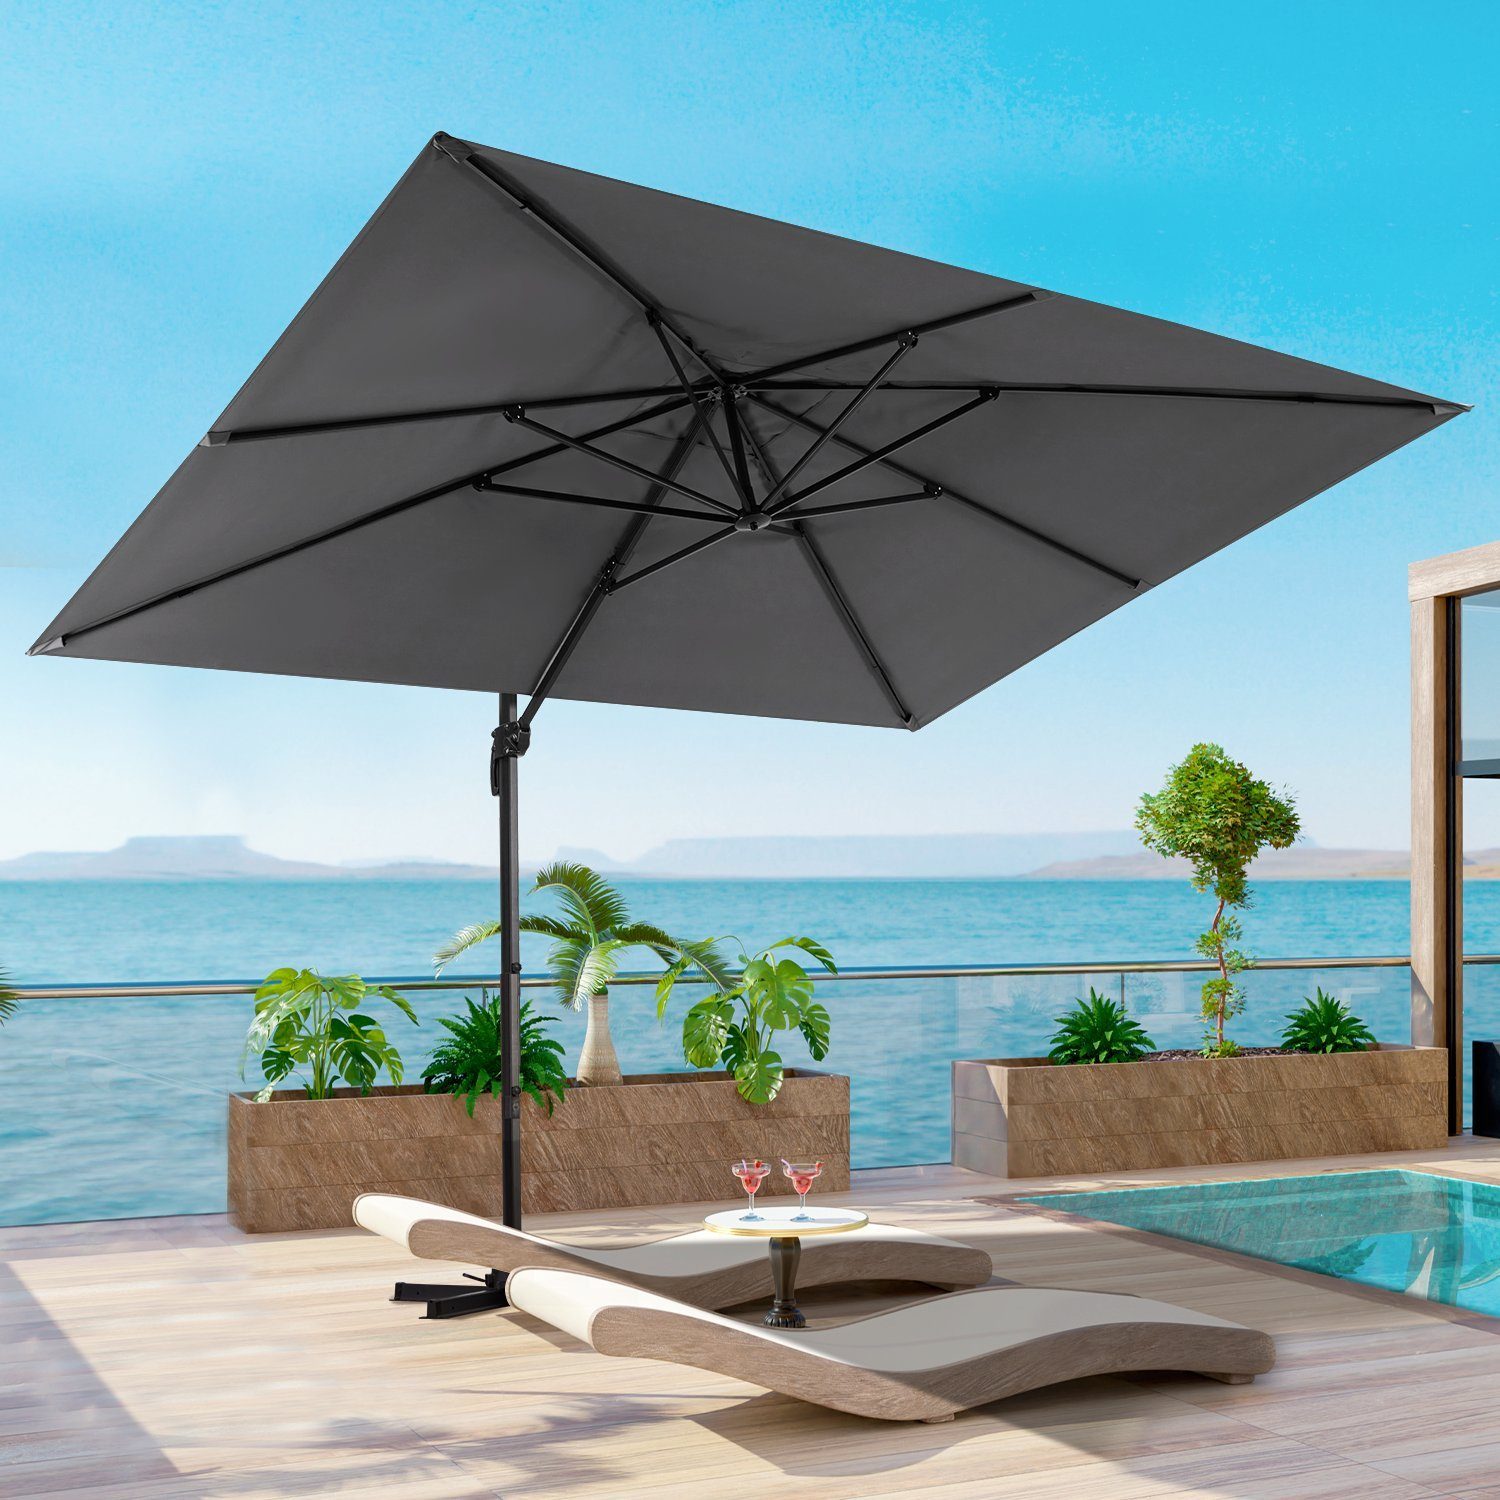 KAHOO Sonnenschirm Strandschirm, Gartenschirm mit Kurbel, ohne Schirmständer